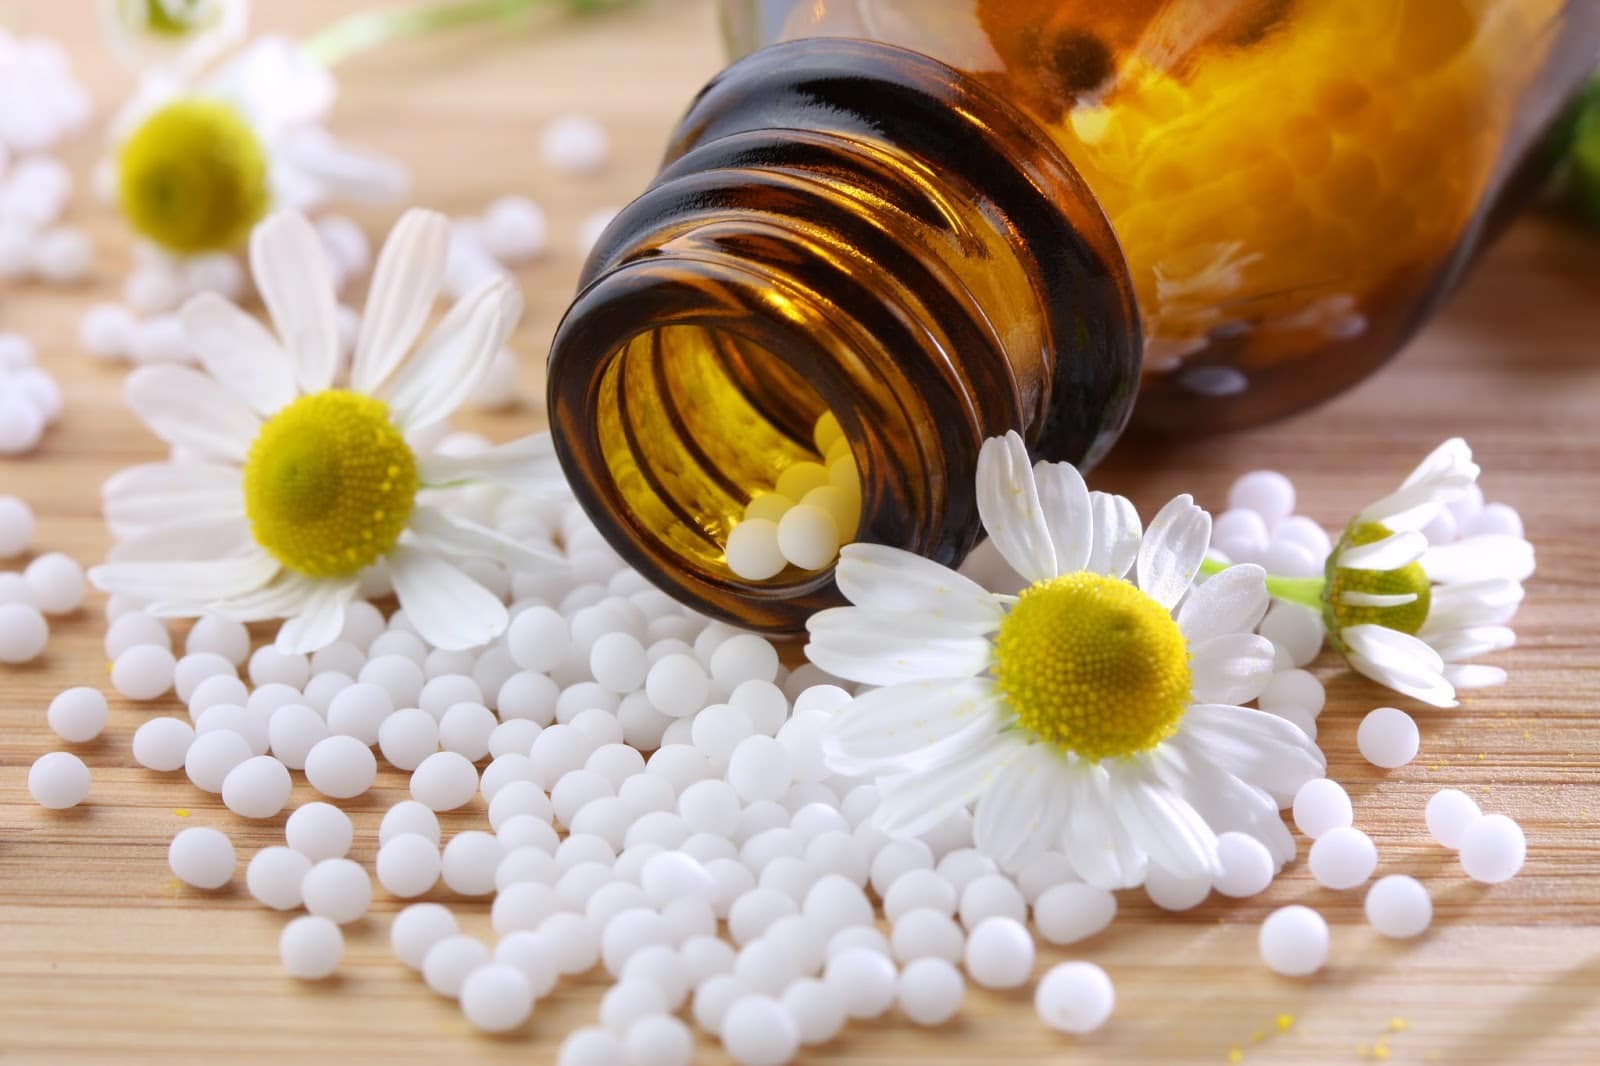 Curso de homeopatía